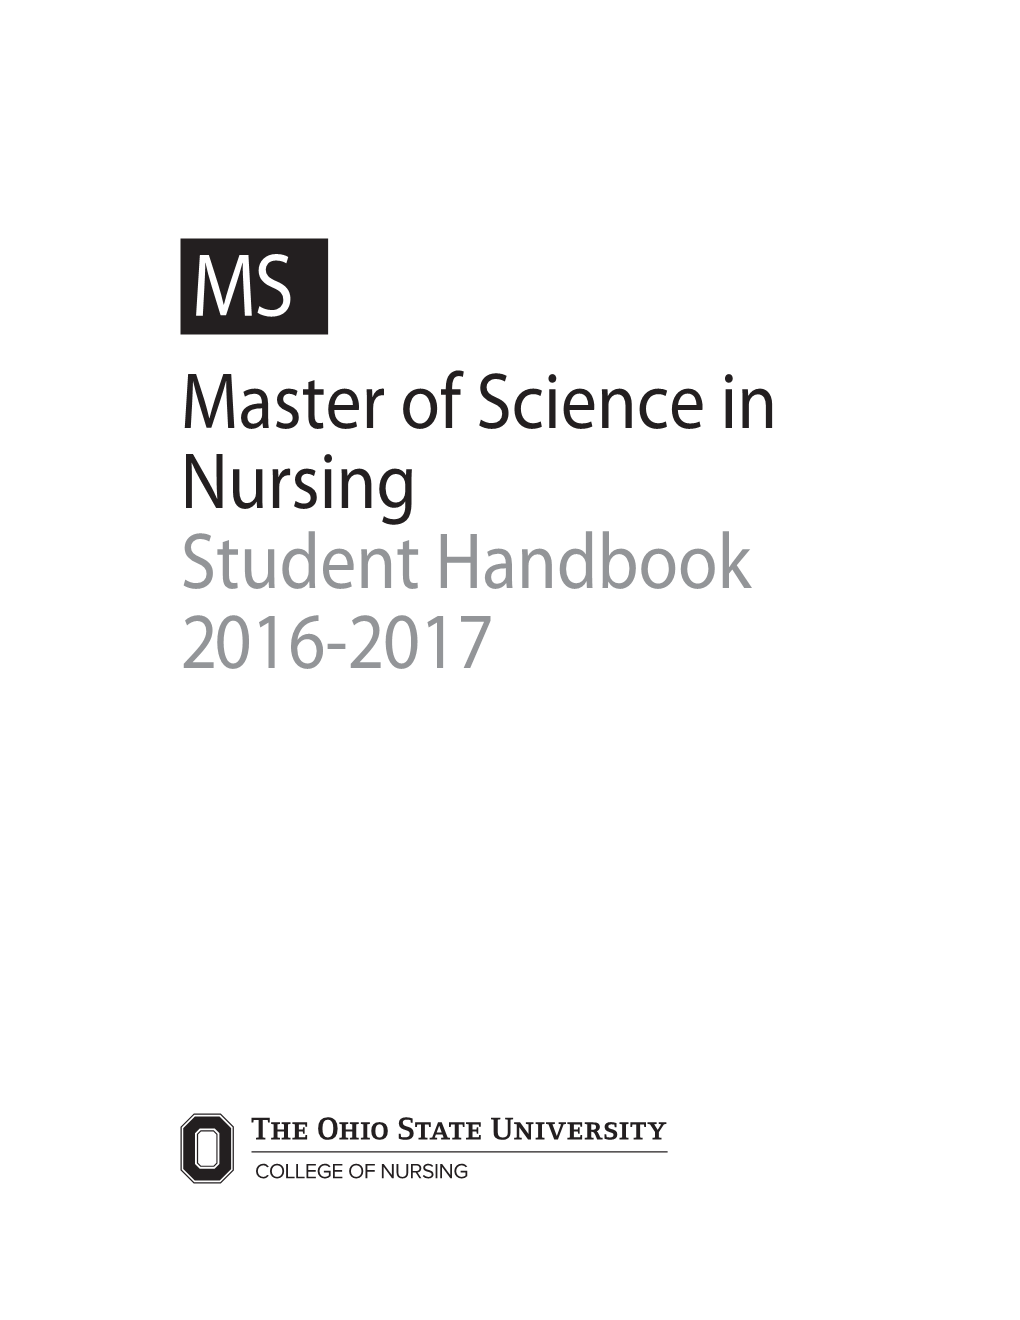 Master of Science in Nursing Student Handbook 2016-2017